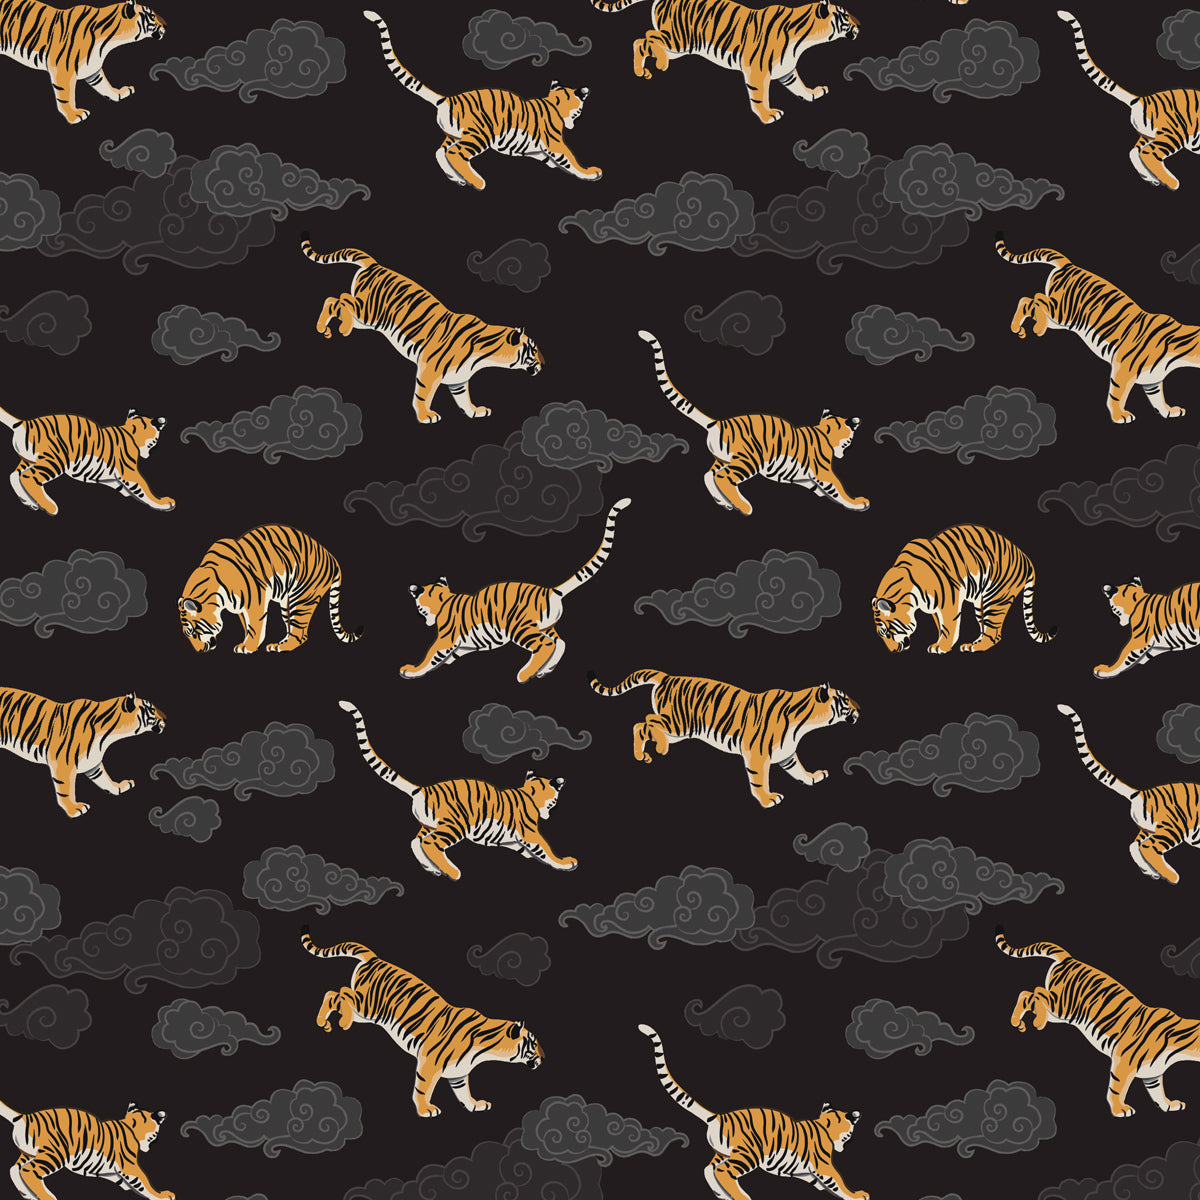 Tigers on Dark Sky Long Zip Wallet - Posh Tide